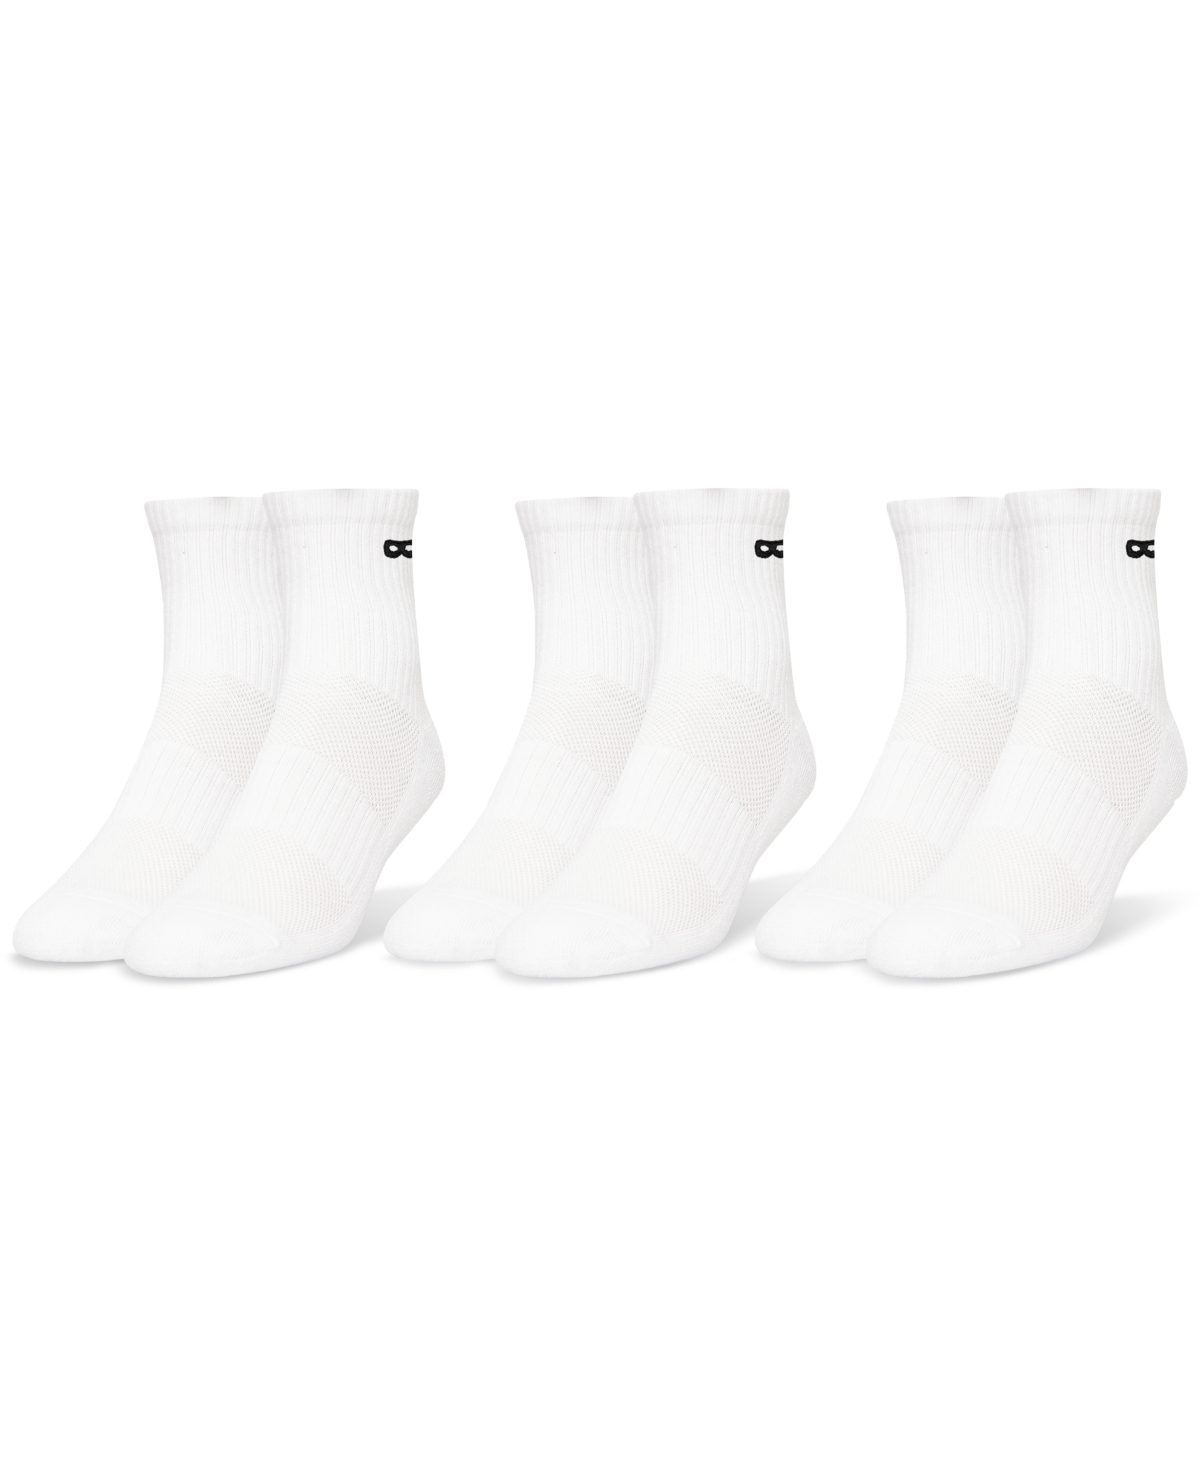 Men's Cushion Cotton Ankle Socks 3 Pack - White